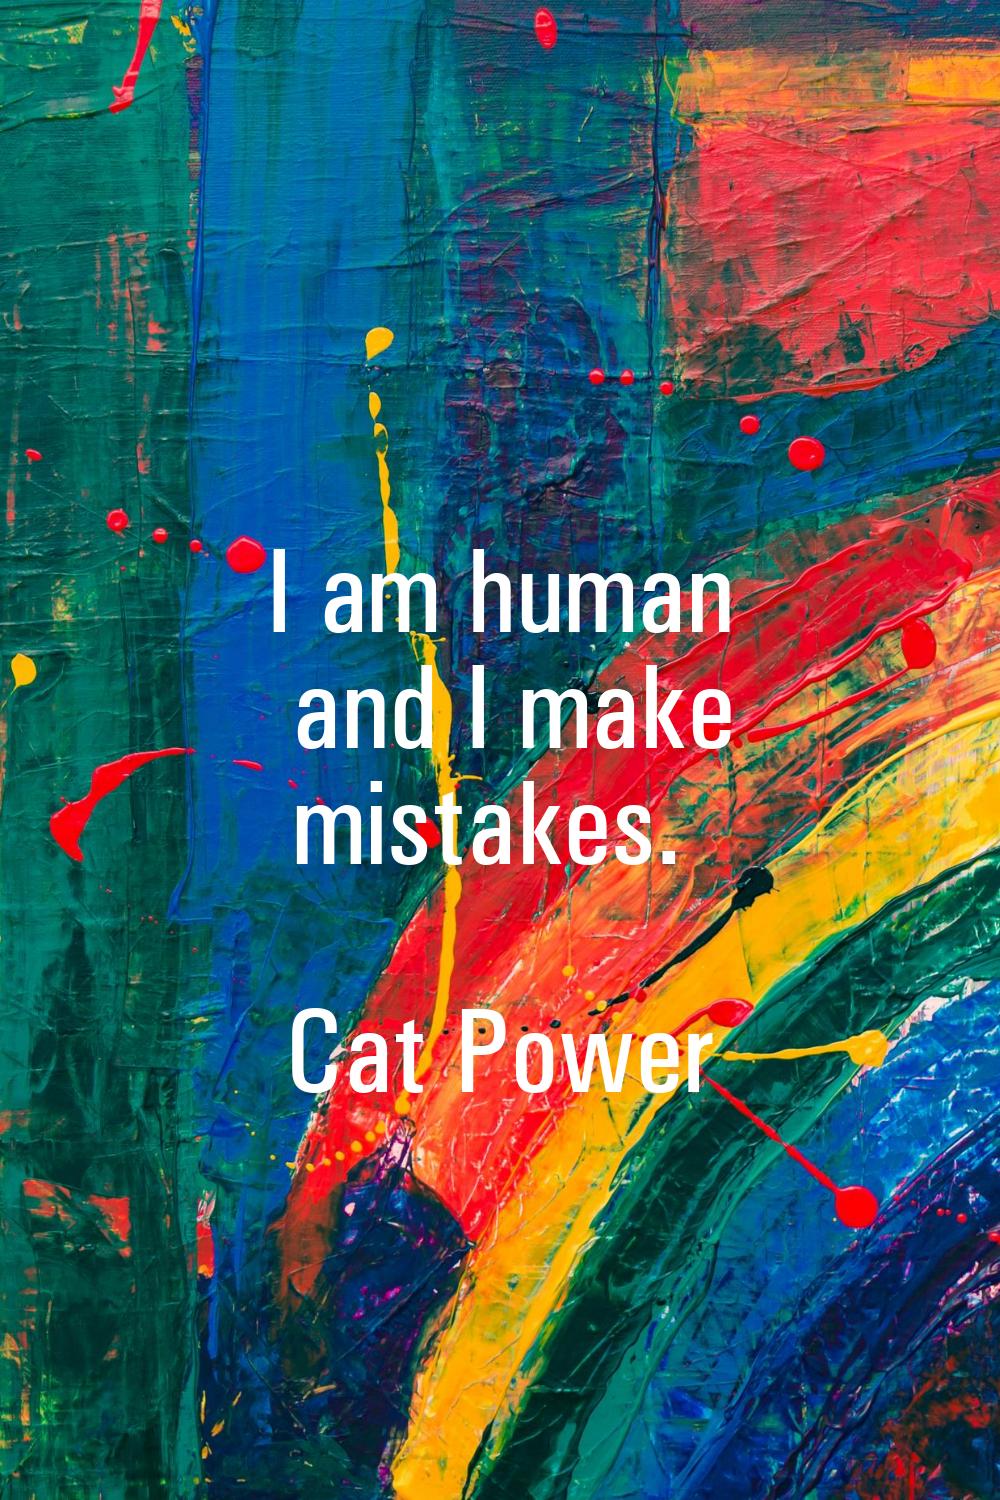 I am human and I make mistakes.